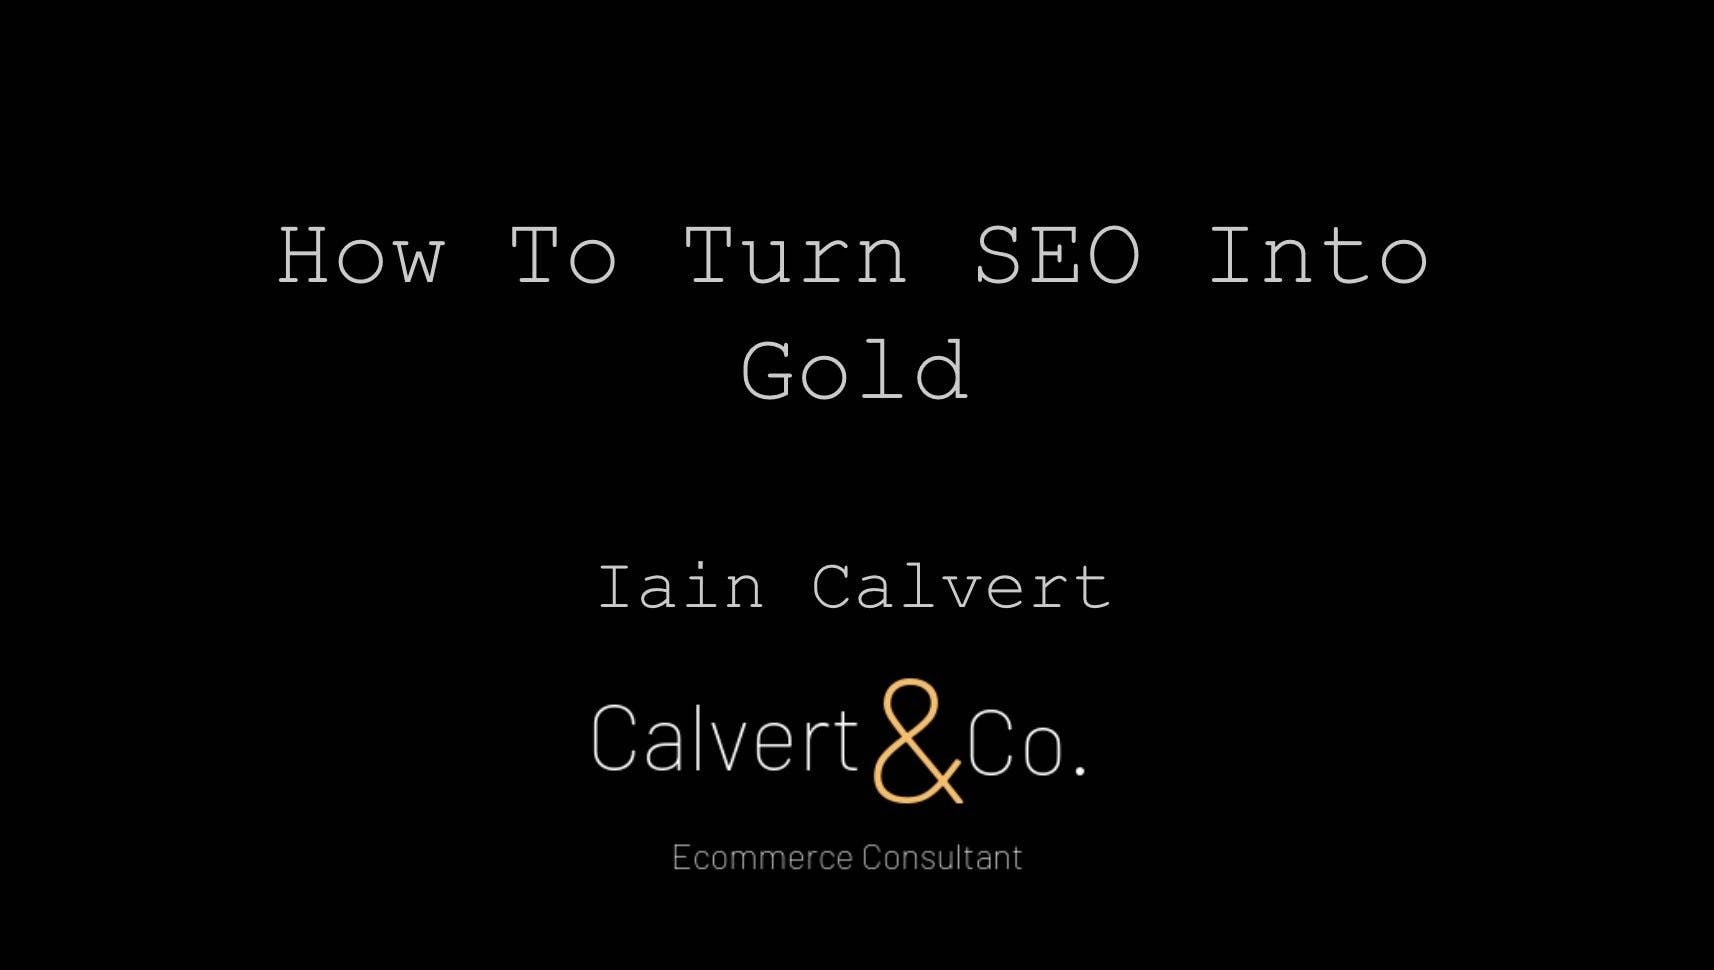 Ian-calvert-seo-into-gold